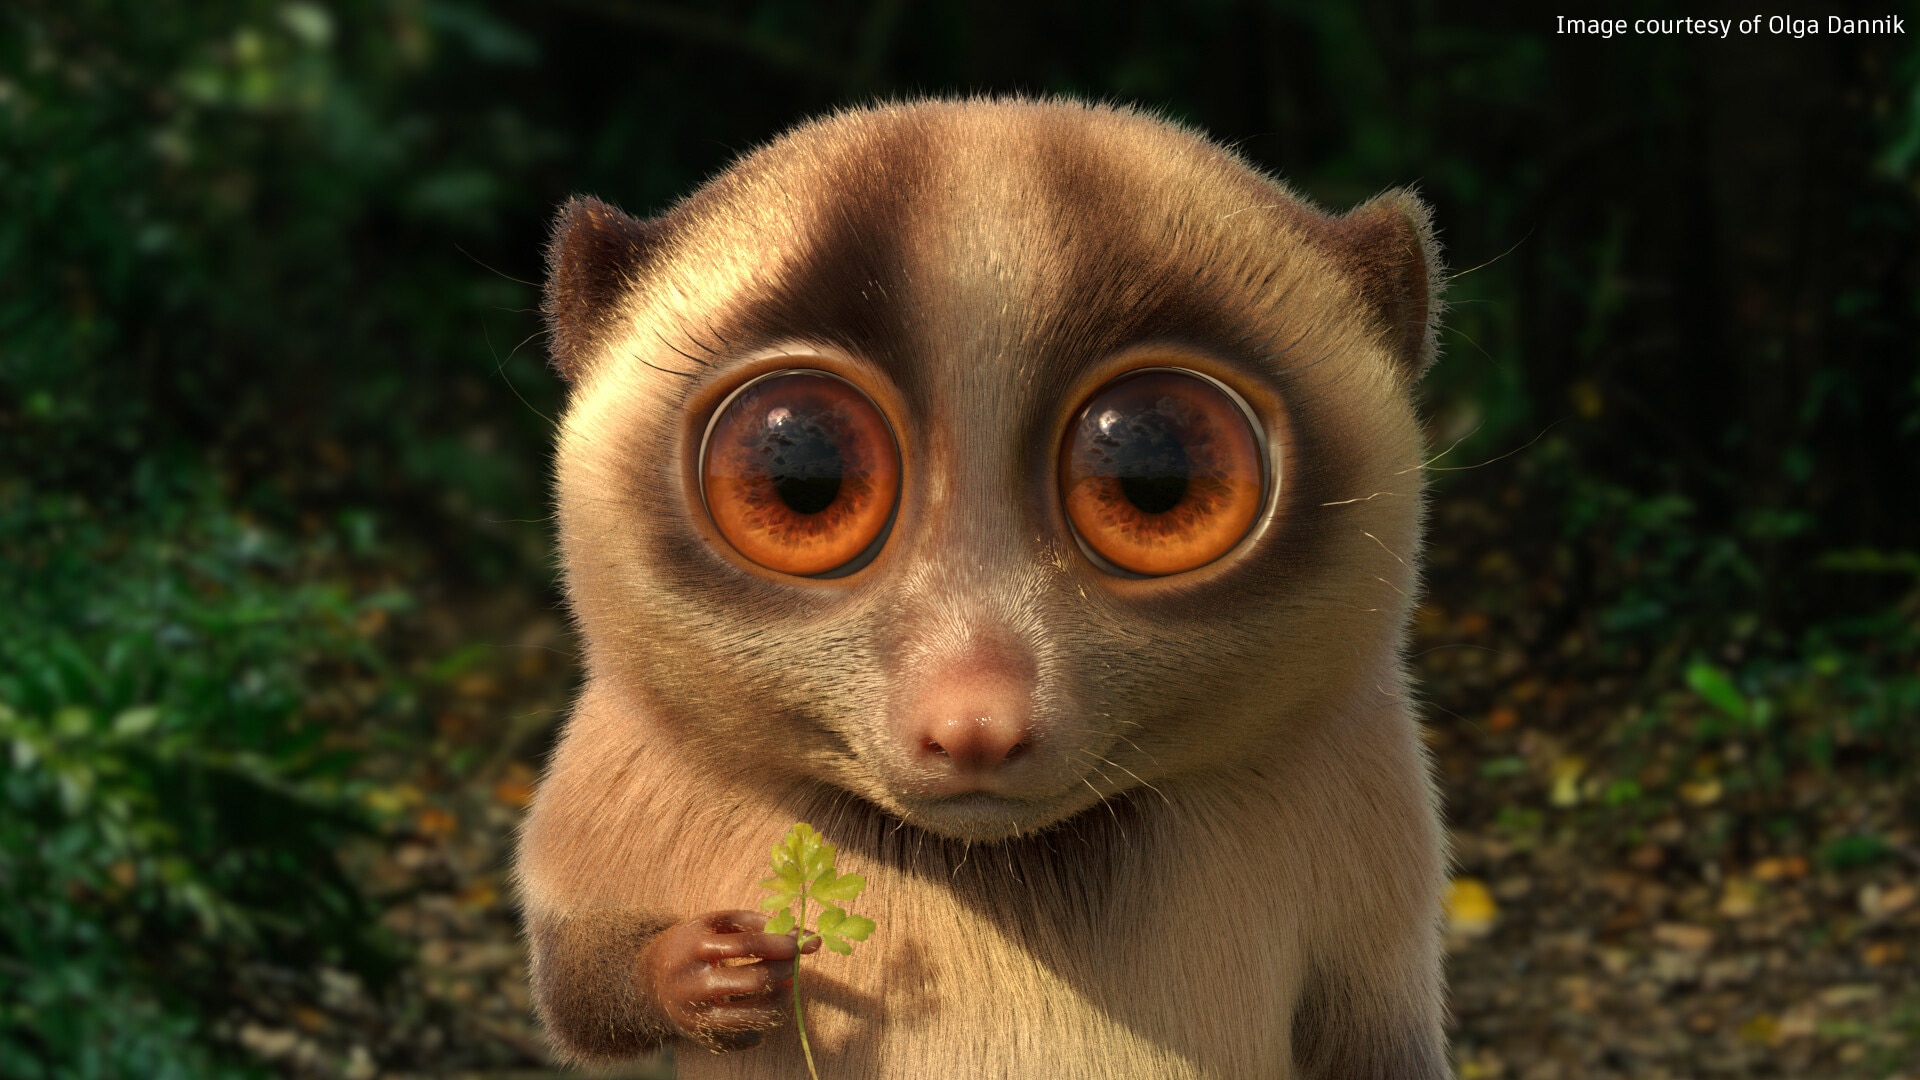 Lemur de caricatura 3D con ojos grandes sosteniendo una hoja